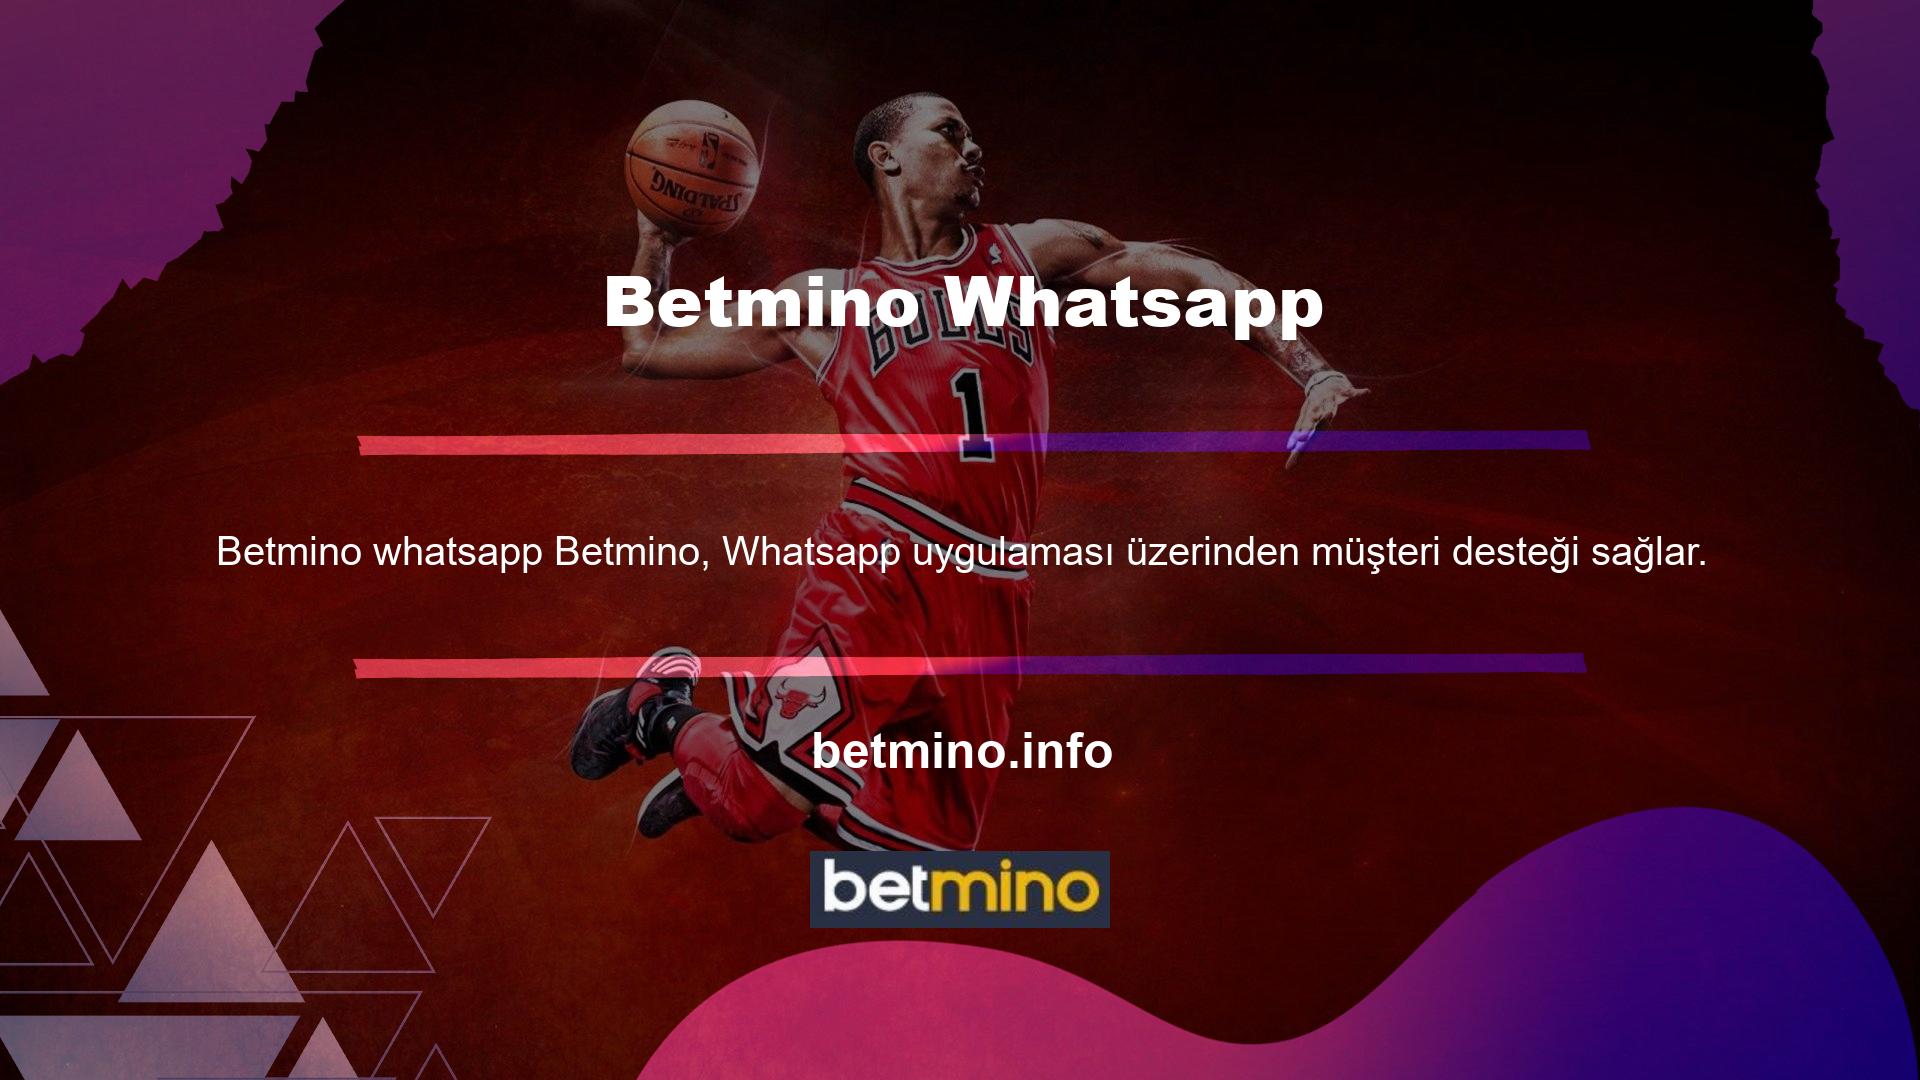 Ayrıca Betmino müşteri hizmetleri 7/24 çalışıyor ve 7/24 iletişime geçebilir, tüm yorum ve sorularınızı Whatsapp üzerinden çözebilirsiniz